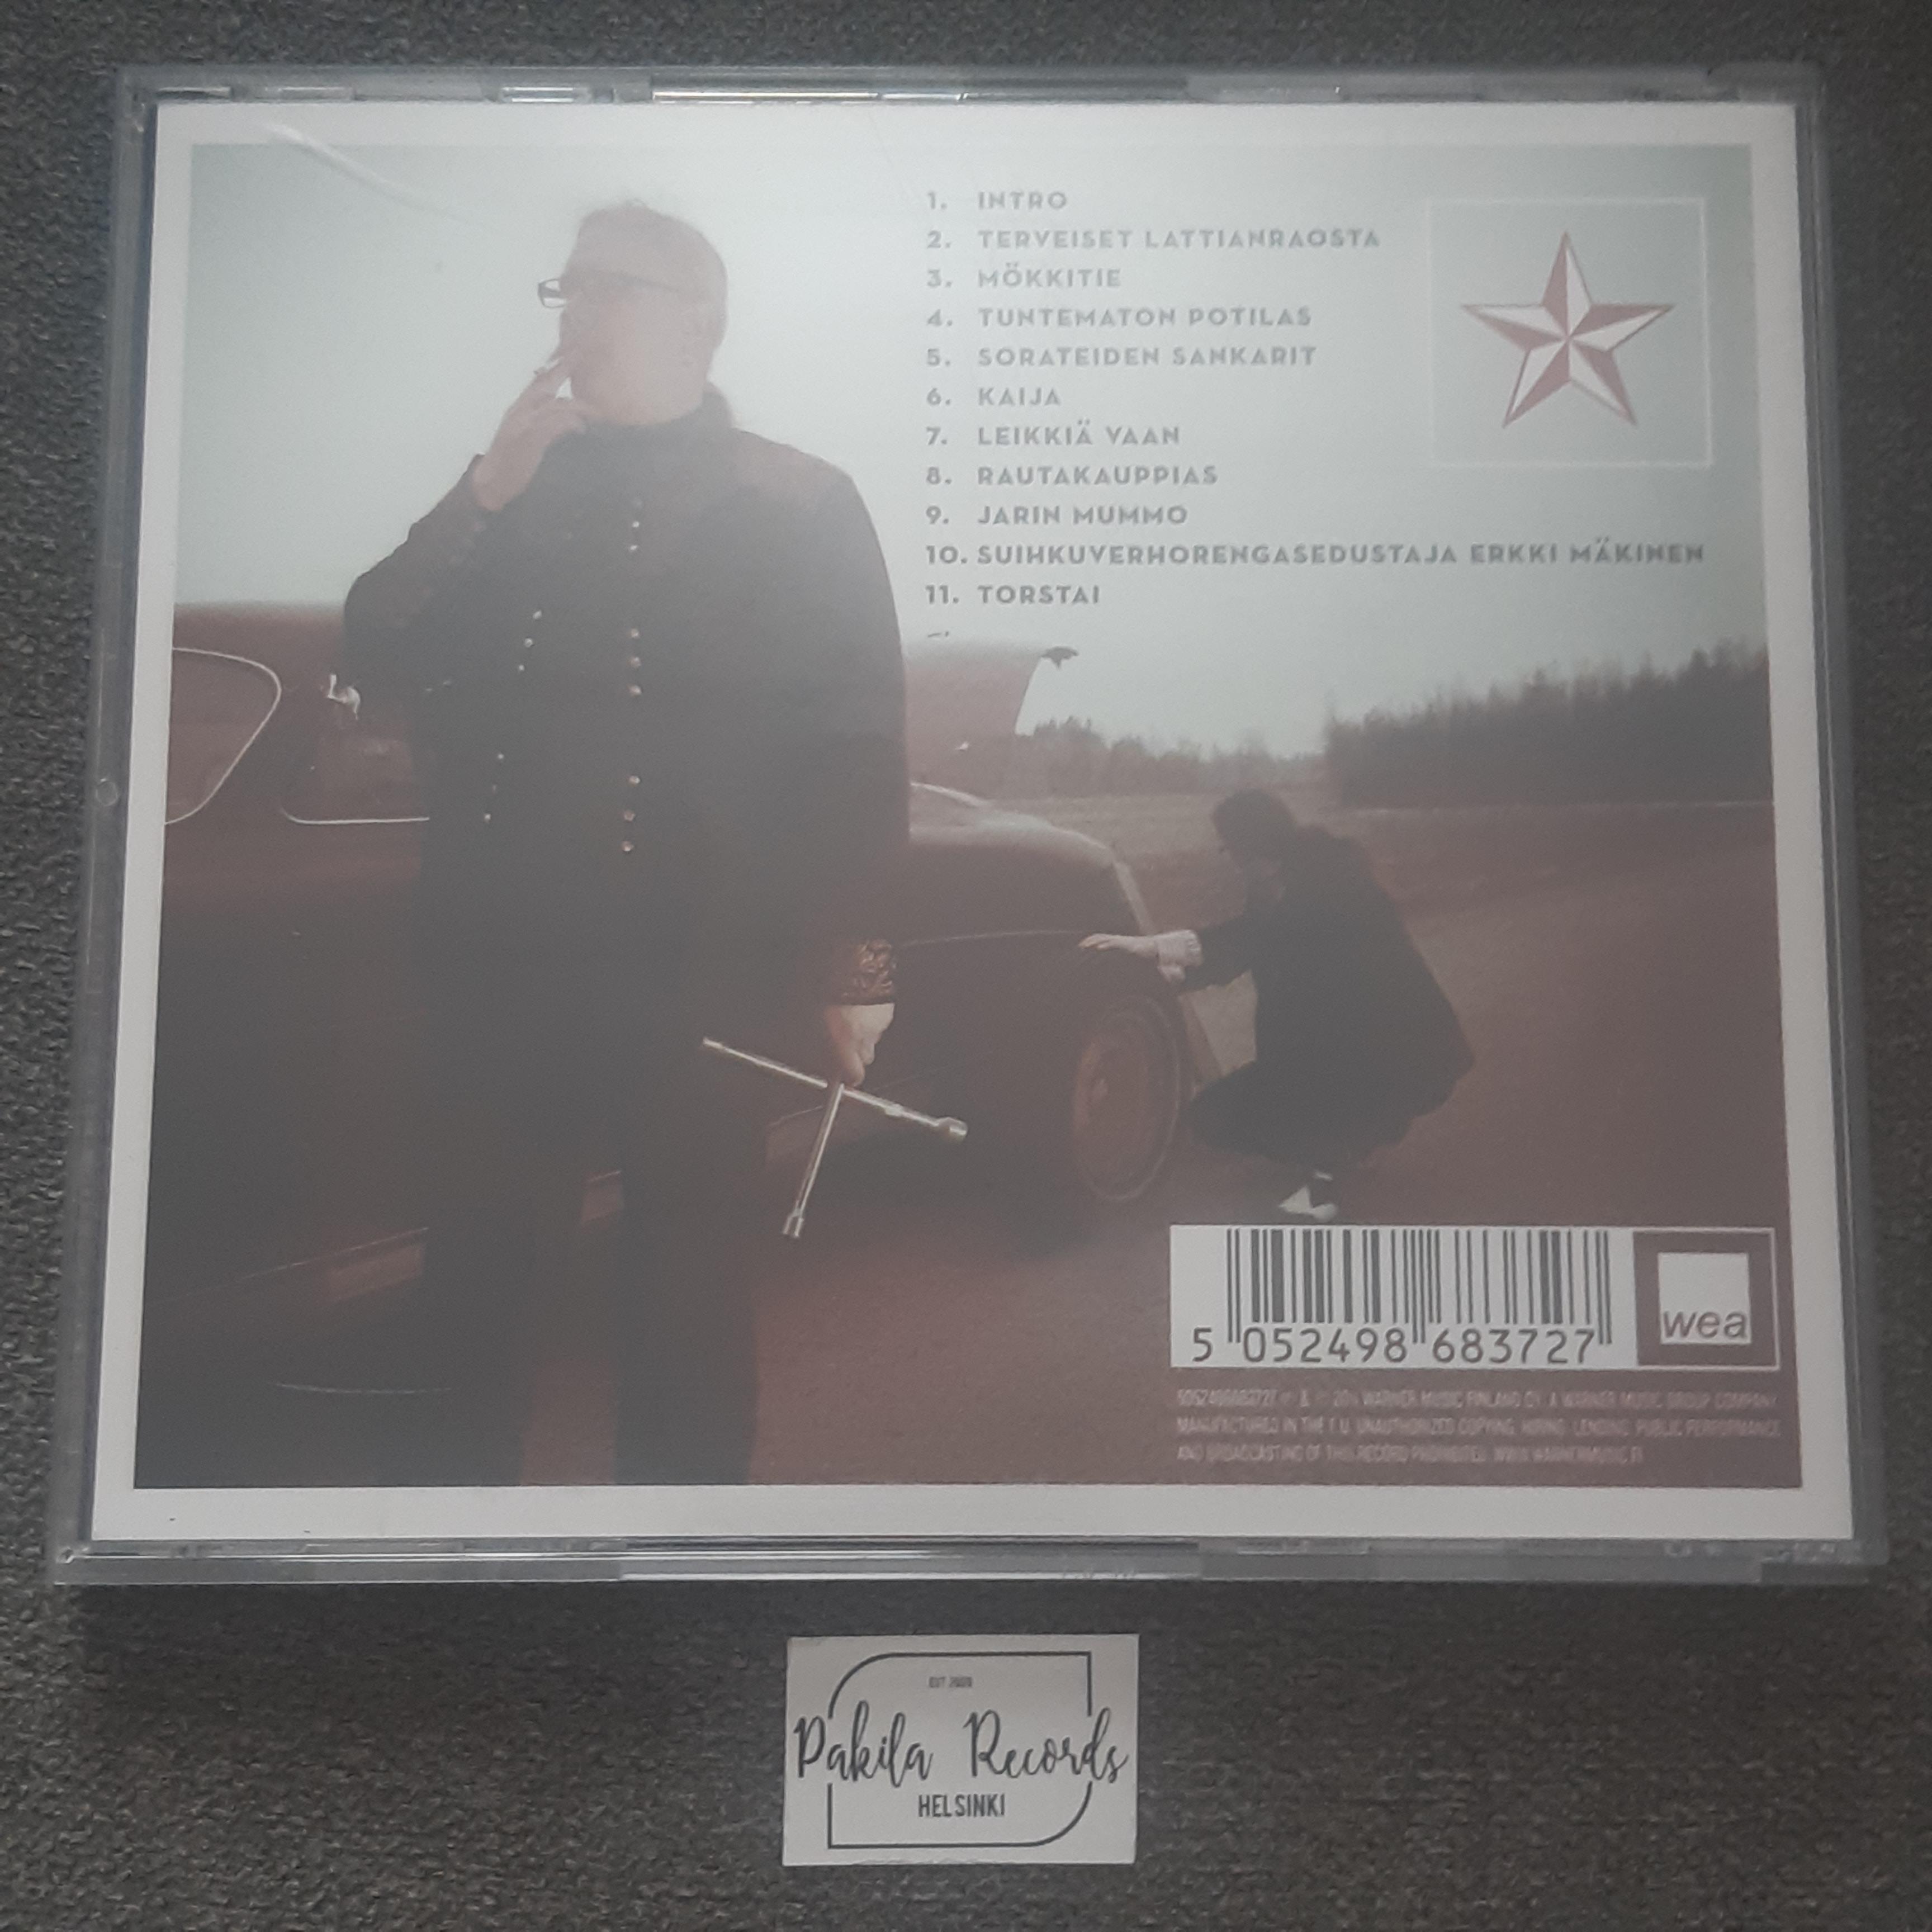 Arttu Wiskari - Arttu Wiskari - CD (käytetty)